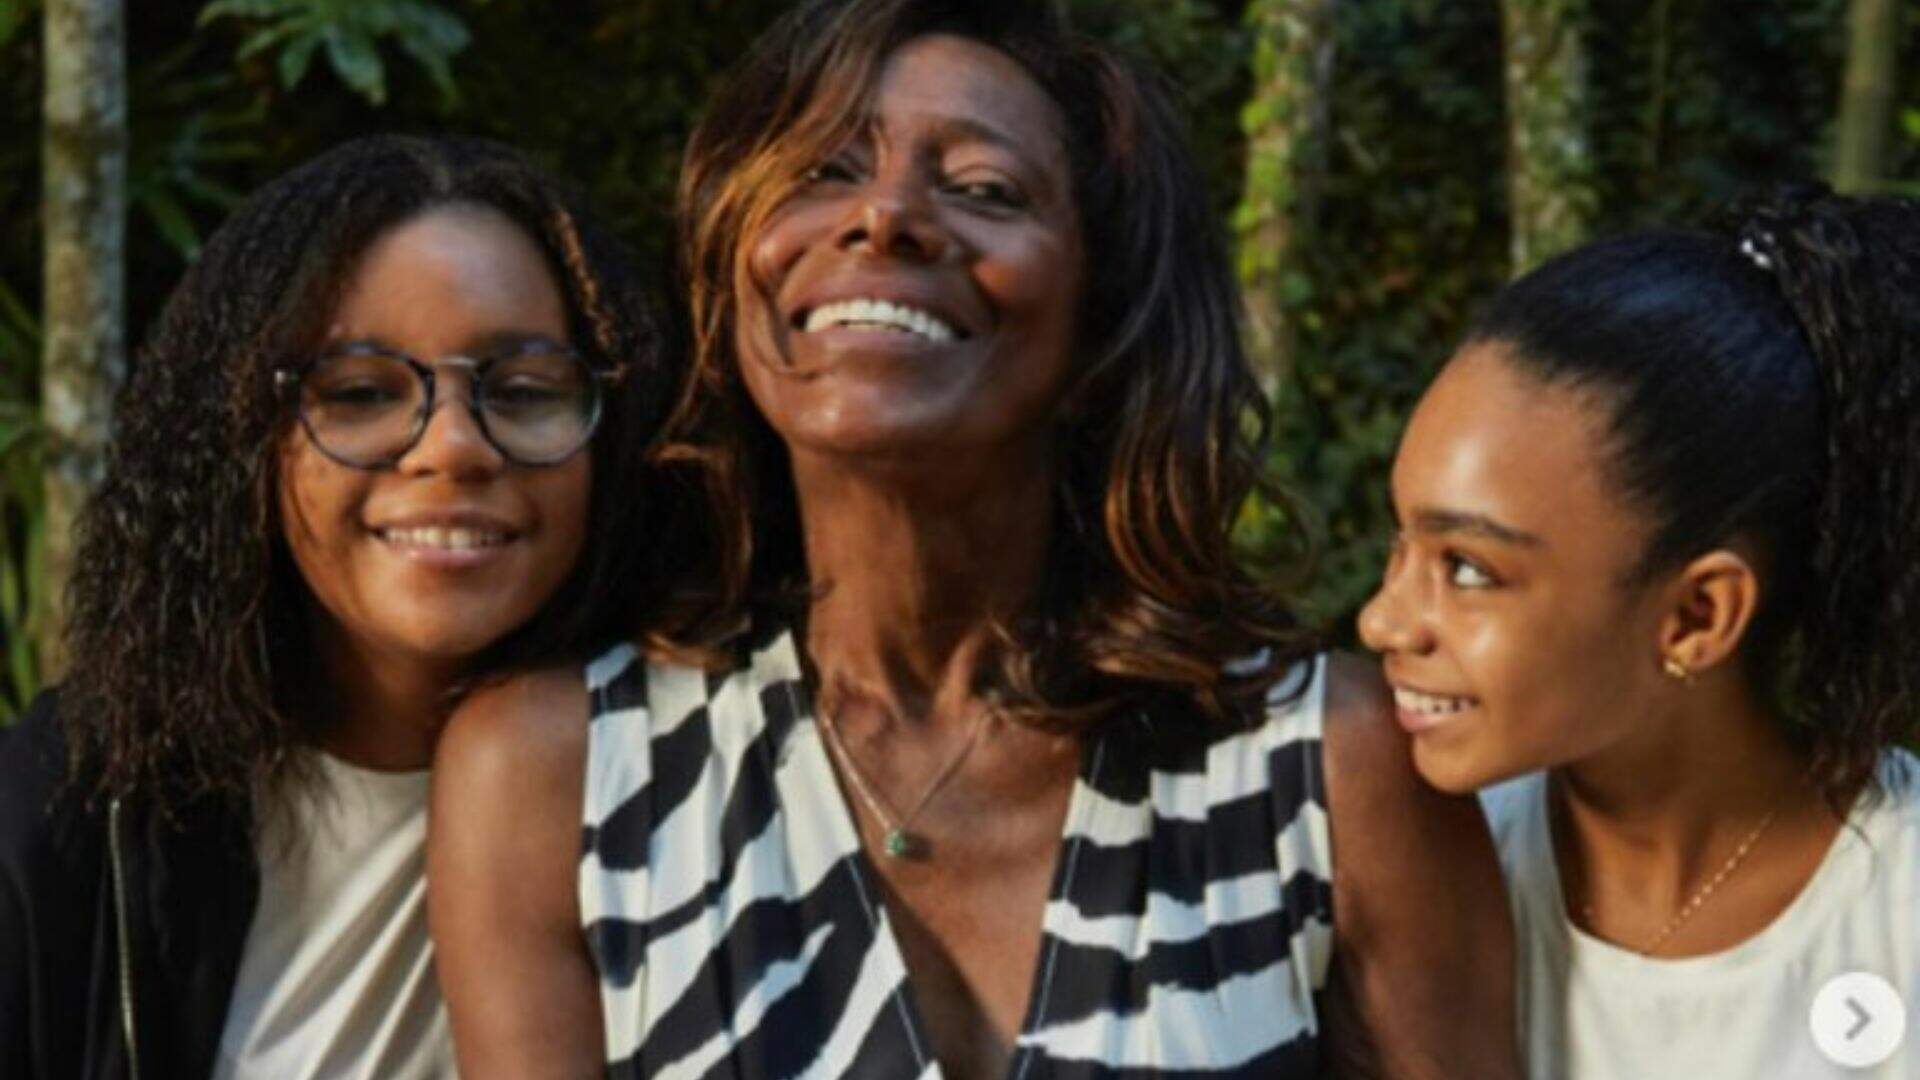 Aniversário de Glória Maria! Filha da jornalista faz post emocionante e homenageia a mãe: “O teu legado” - Metropolitana FM